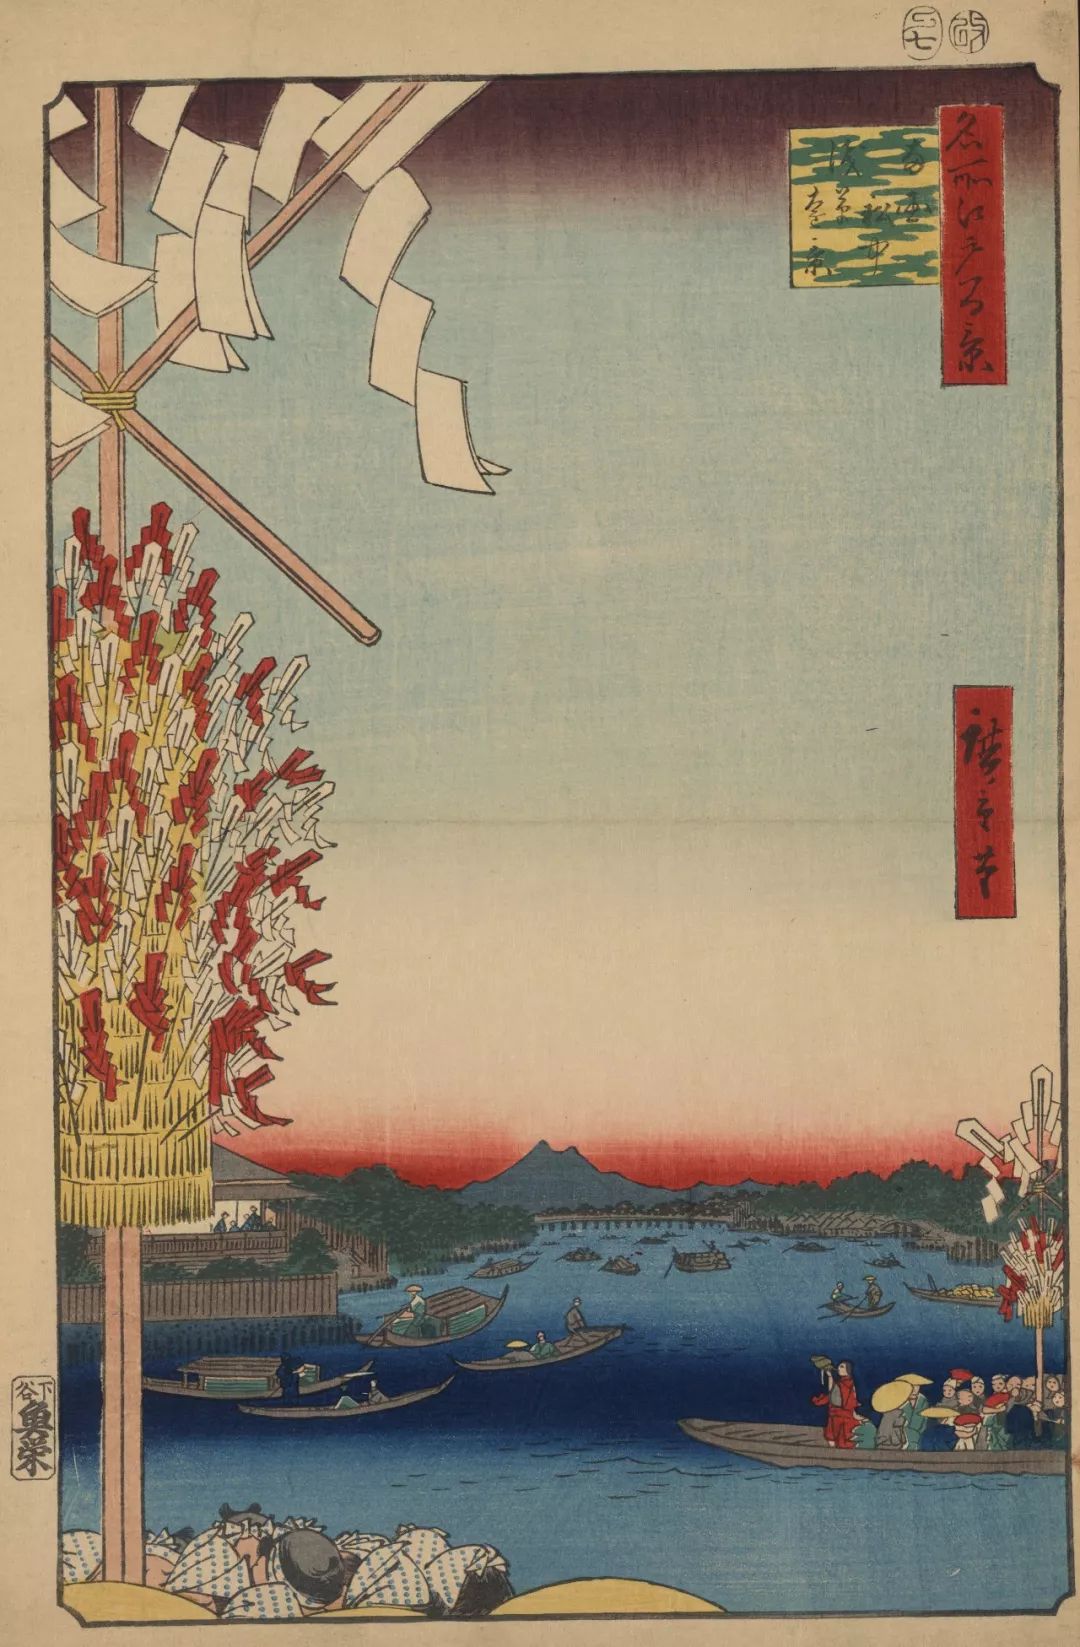 《江户百景图》描绘了那时东京的100多处繁荣景象,这些浮世绘版画深受